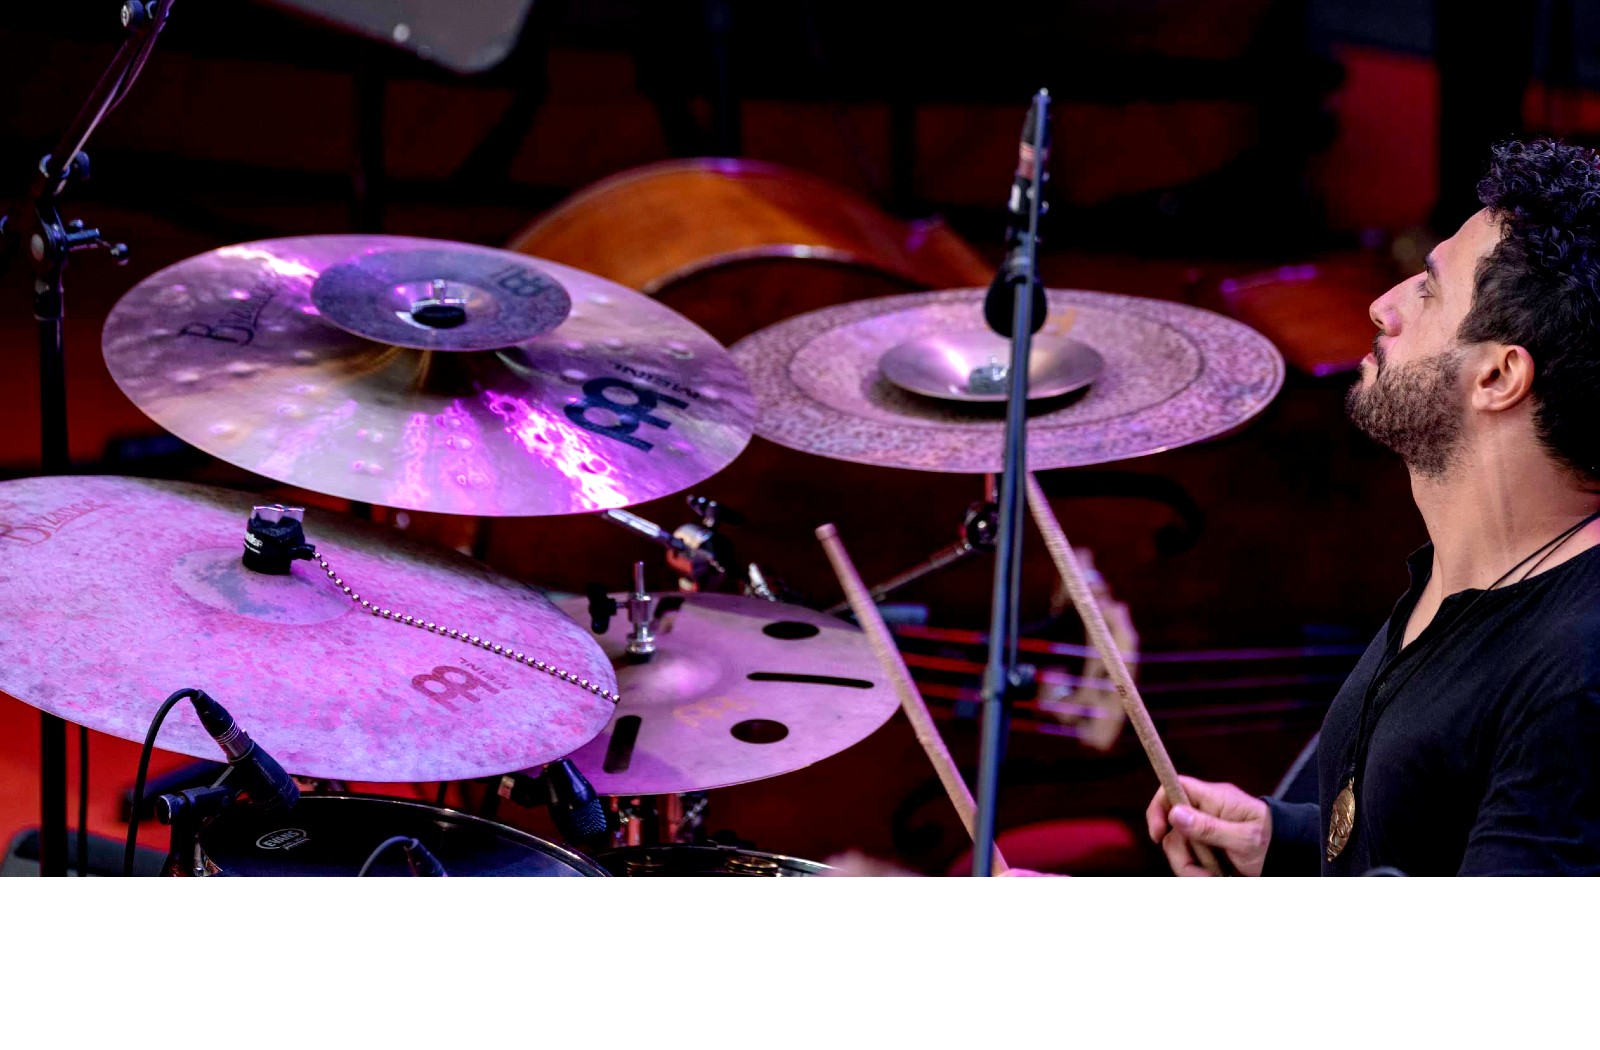 Santino am Drumset, Jazzopen Bühne